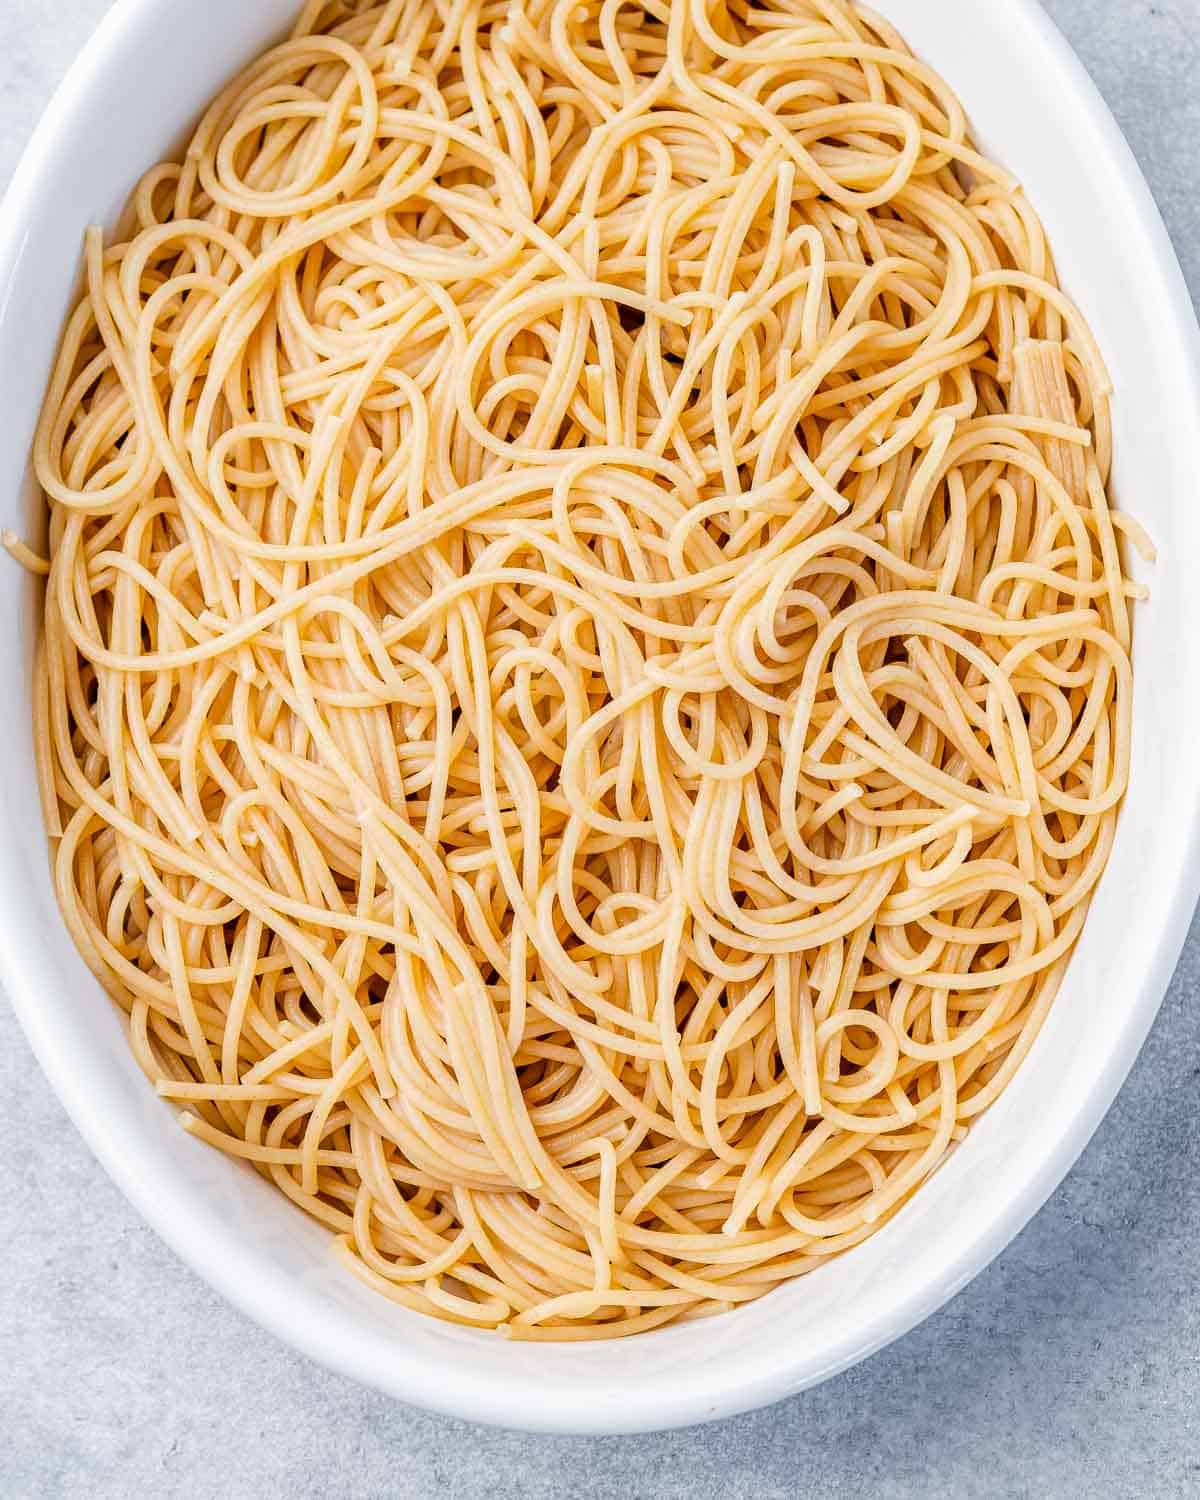 Spaghetti noodles in a white casserole dish.